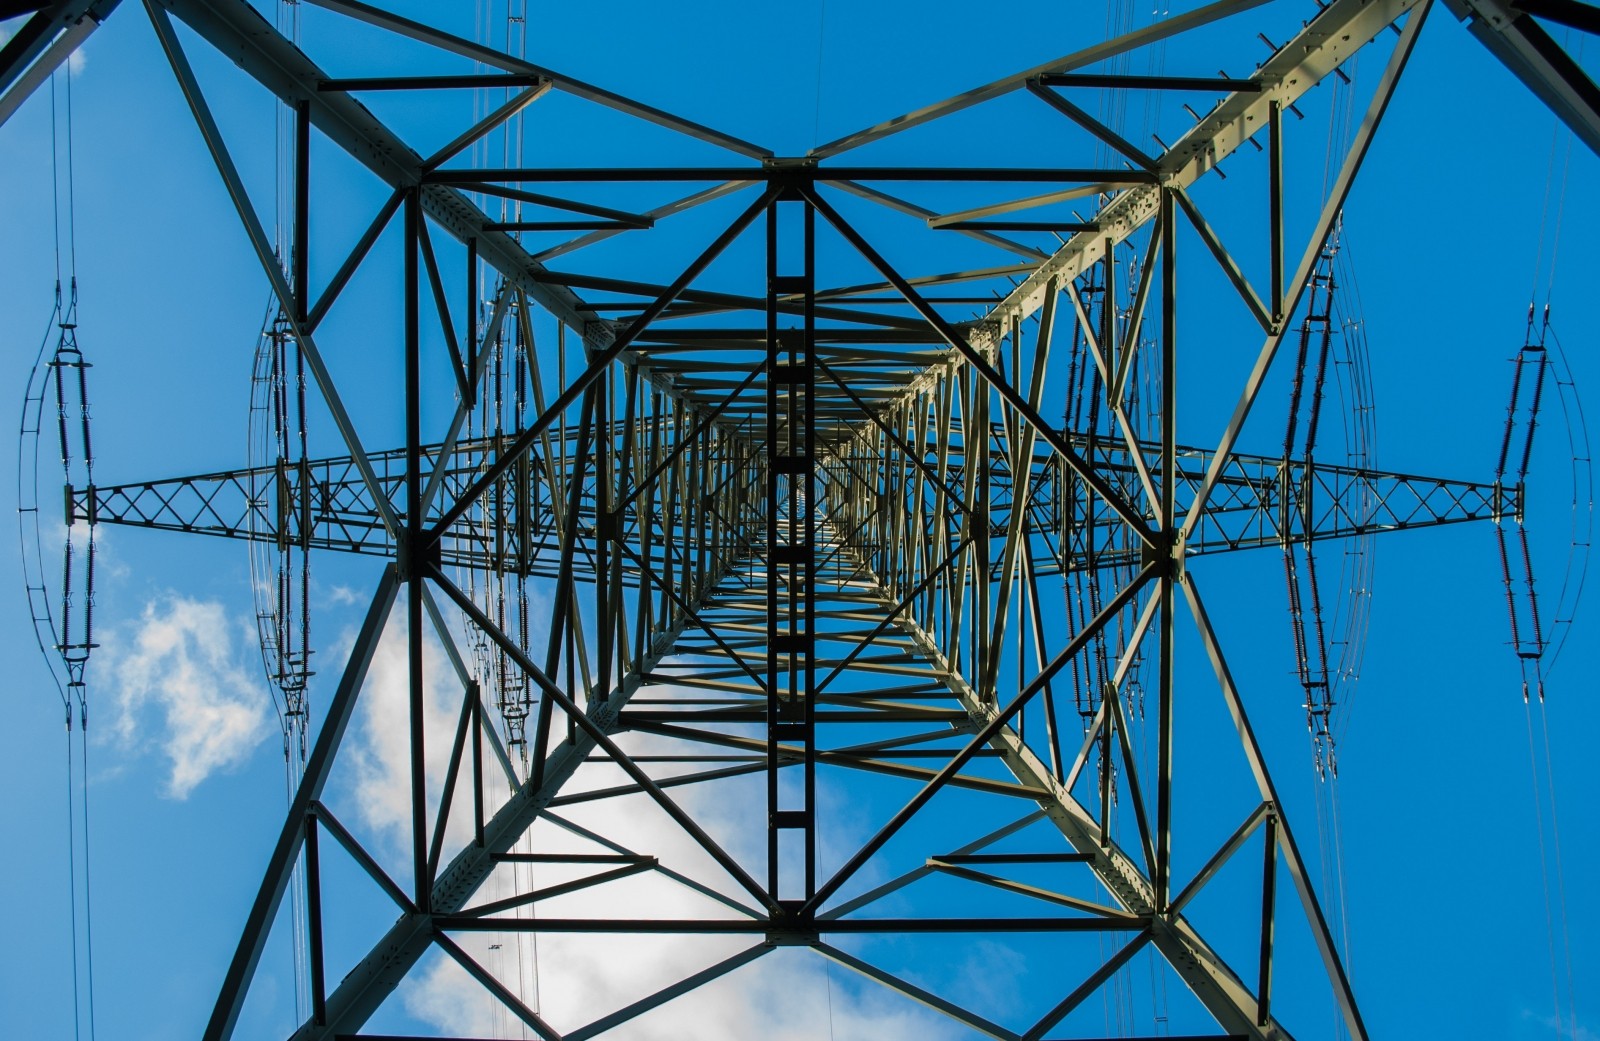 Ulusoy Elektrik’ten 7,8 milyon dolarlık işbirliği